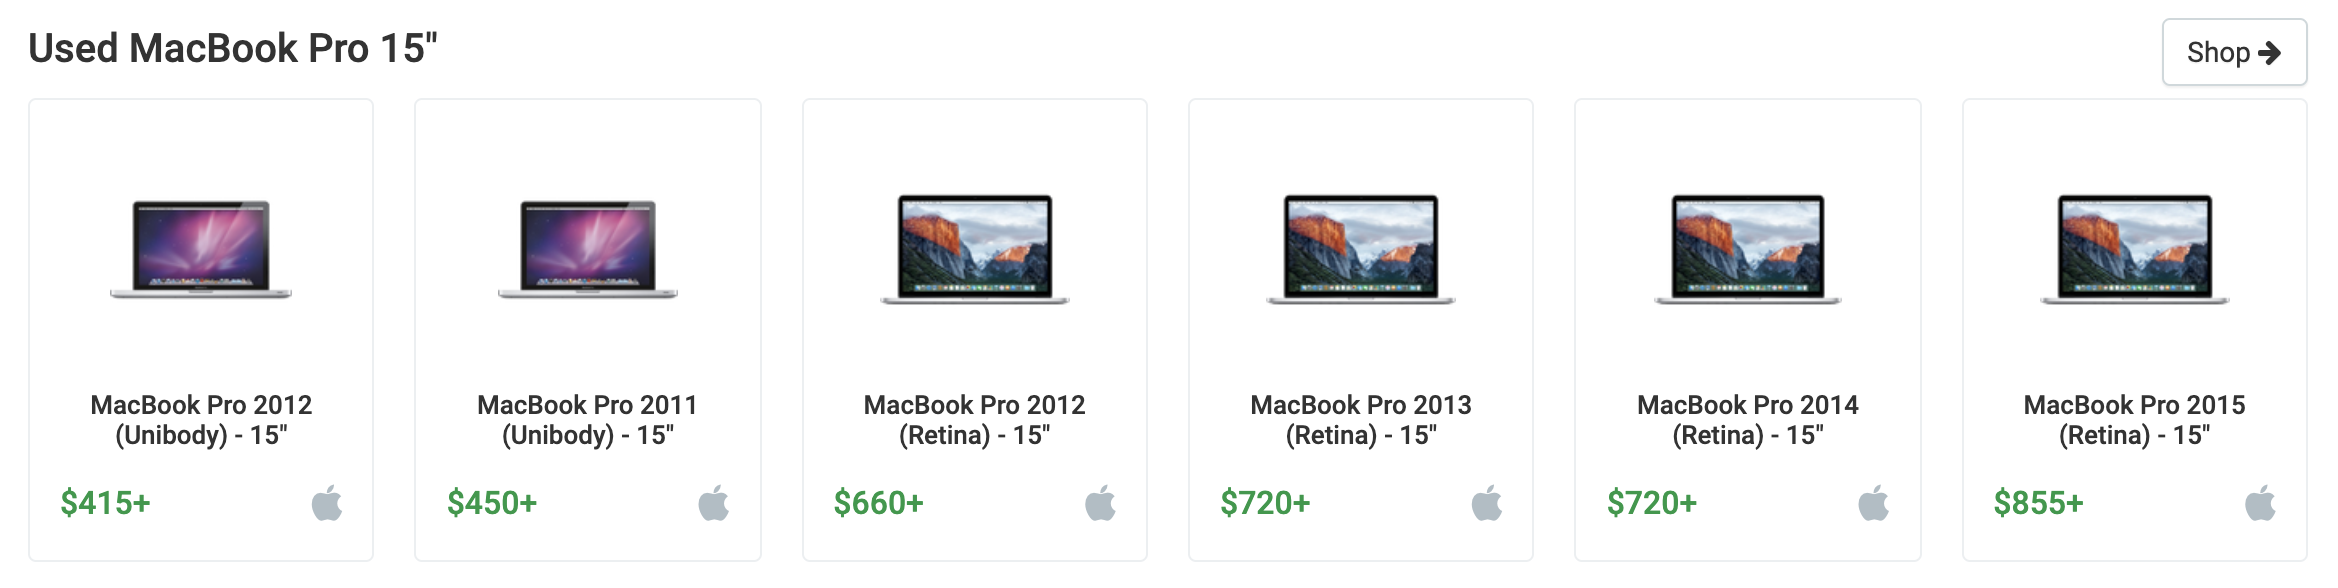 apple trade in macbook air 2020